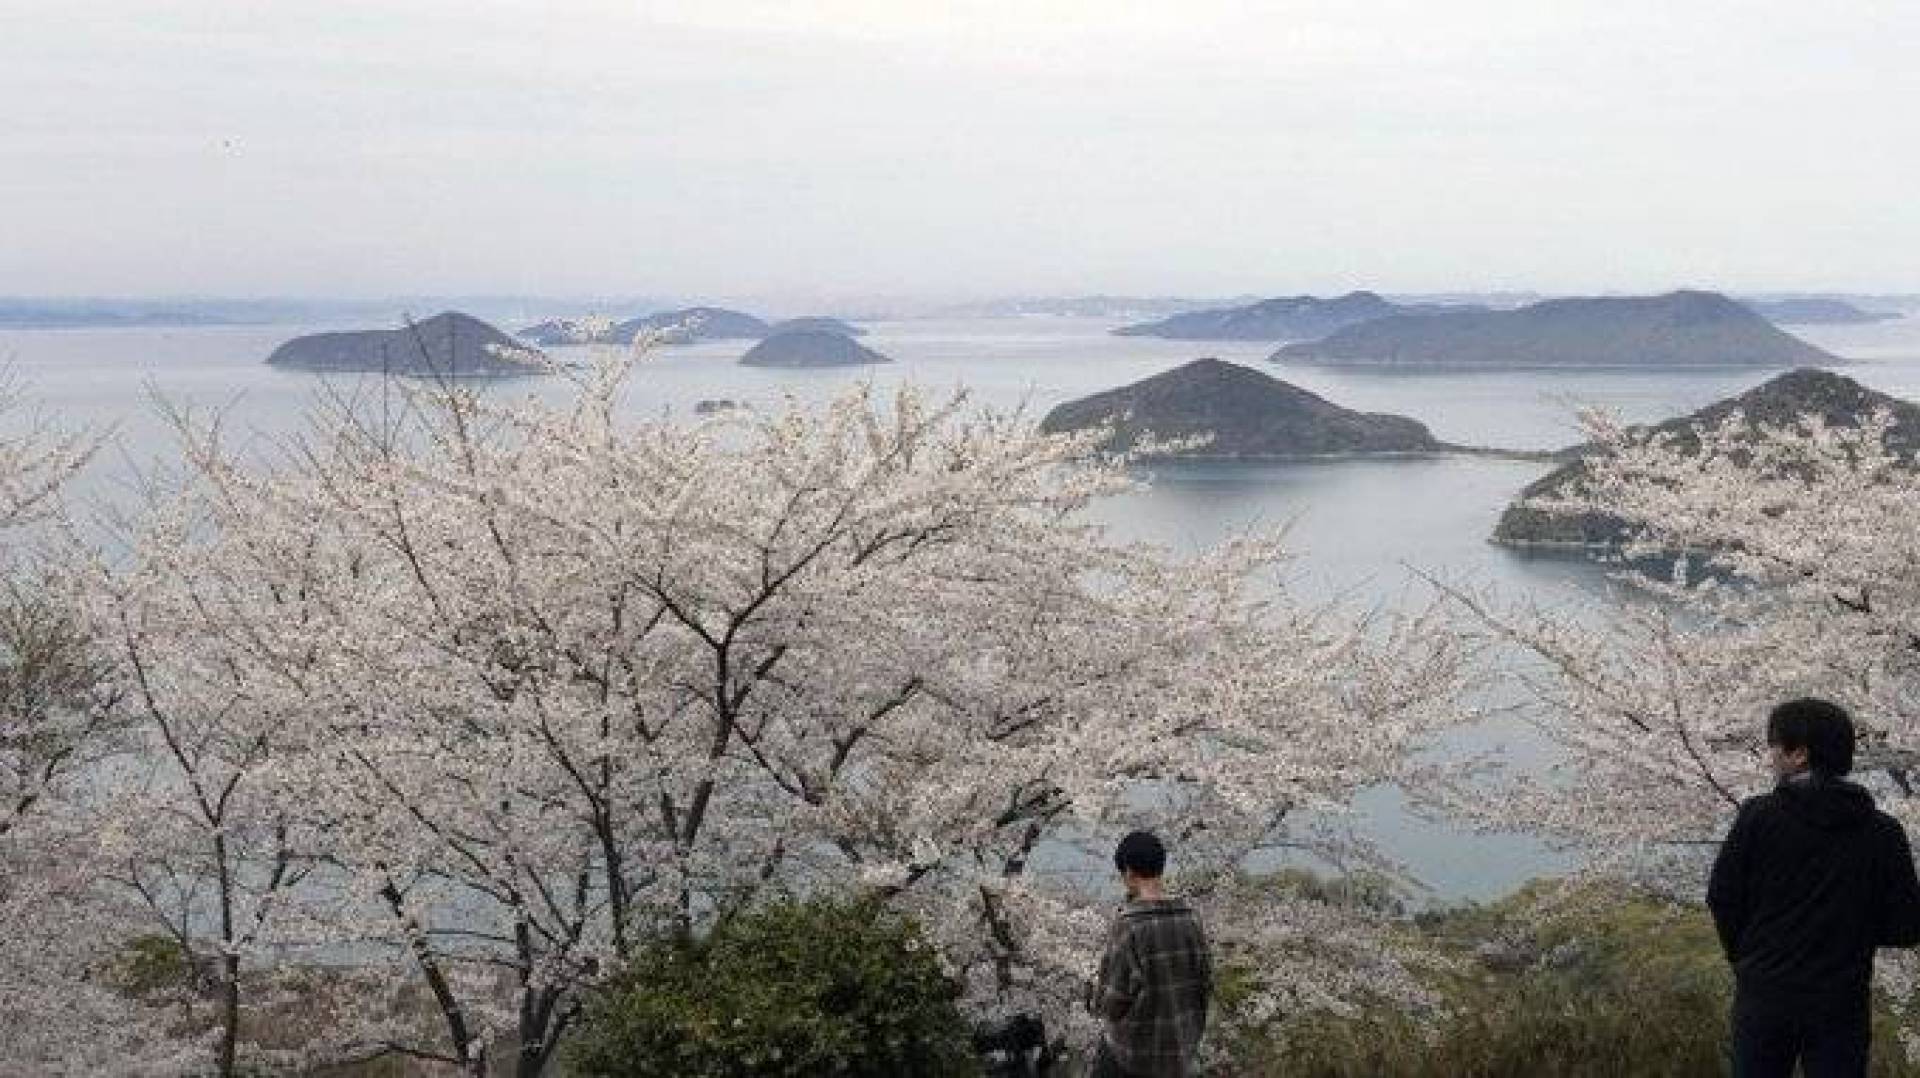 اليابان تكتشف 7 آلاف جزيرة جديدة بفضل تقنية خرائط المسح المتقدمة